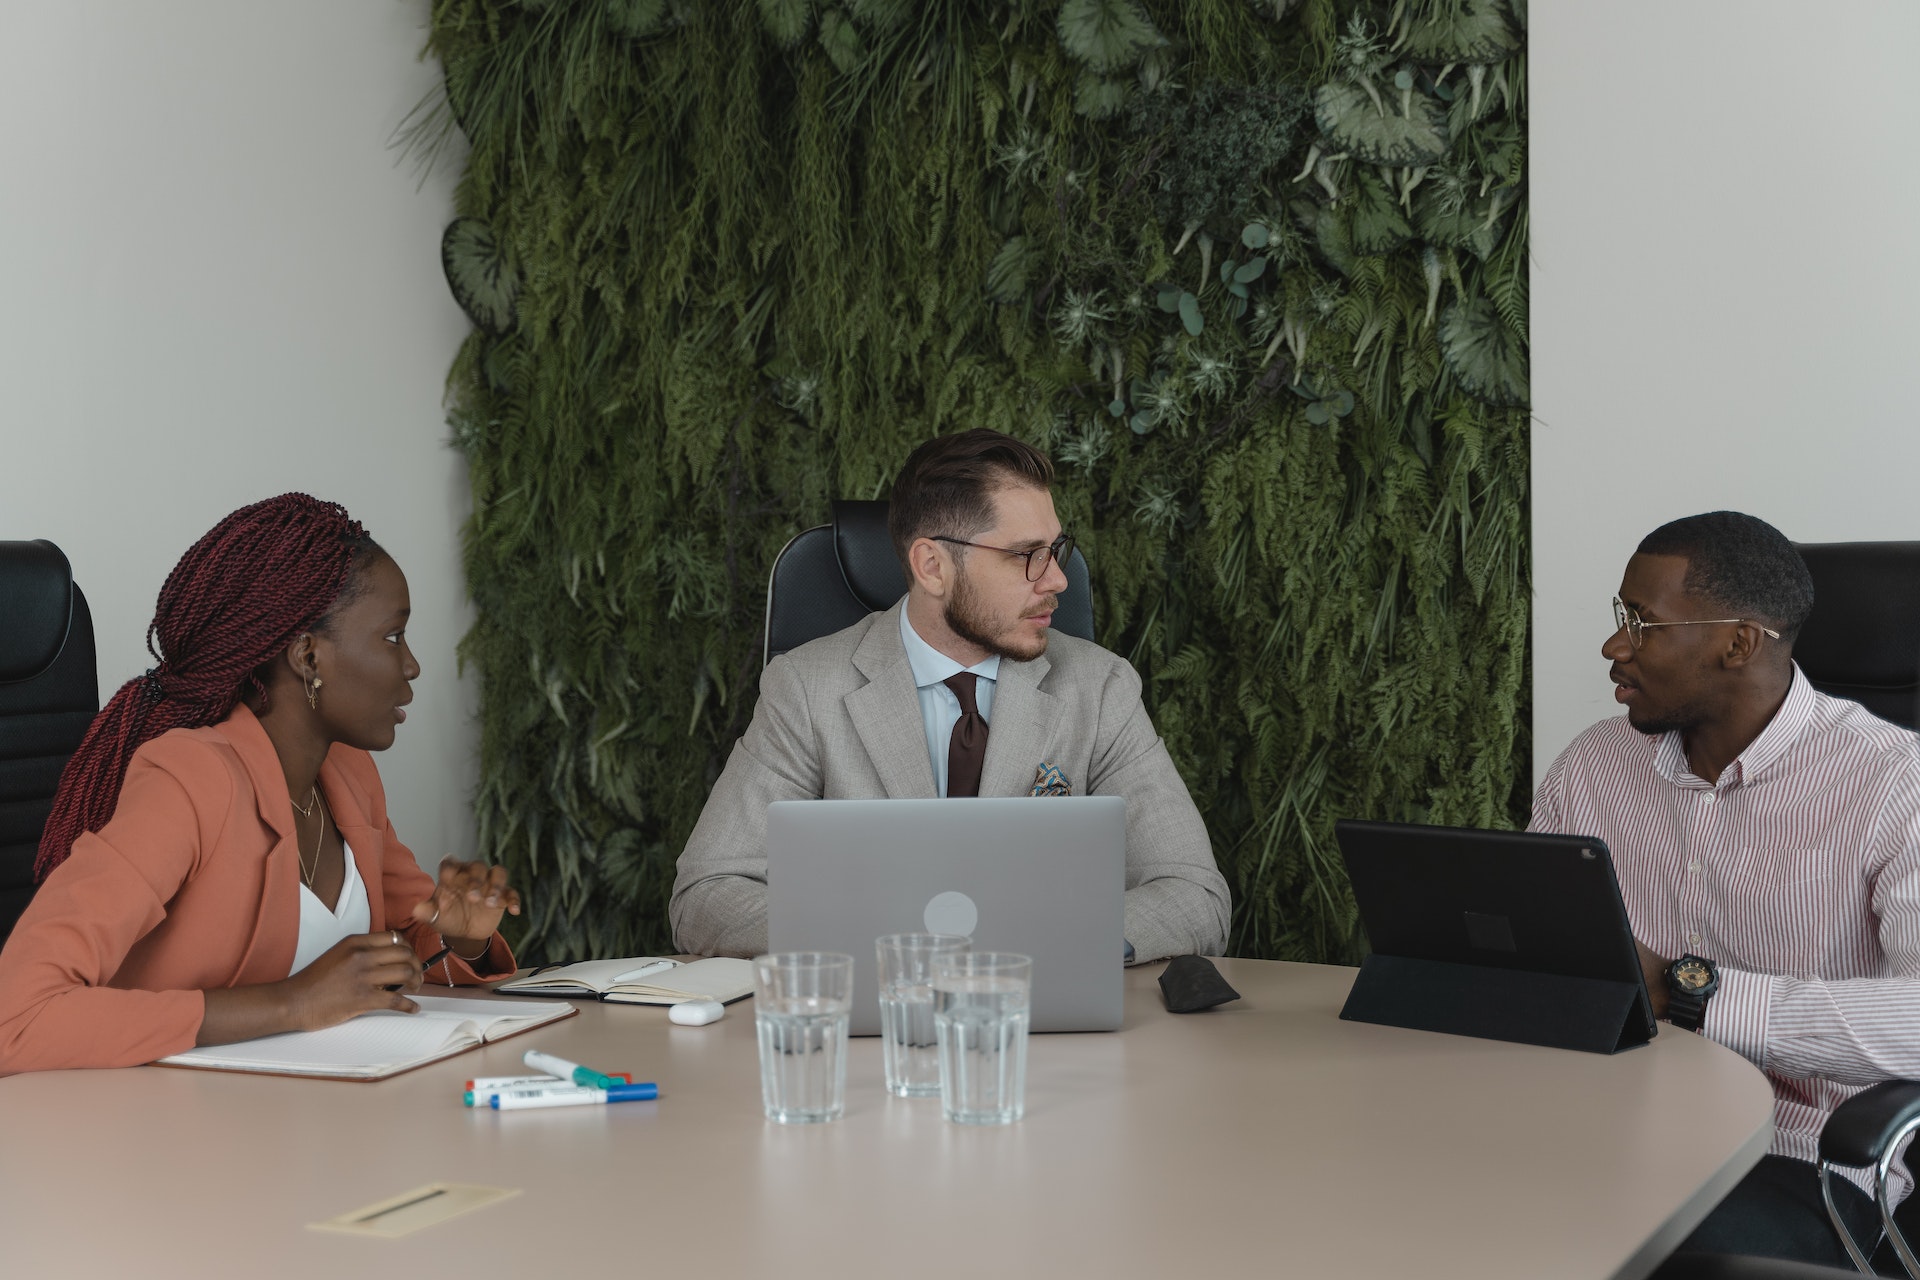 Vemos três pessoas empreendedoras reunias à mesa. Juntas, elas discutem ações em torno de seus negócios.

Imagem para texto: venture builder da Semente.